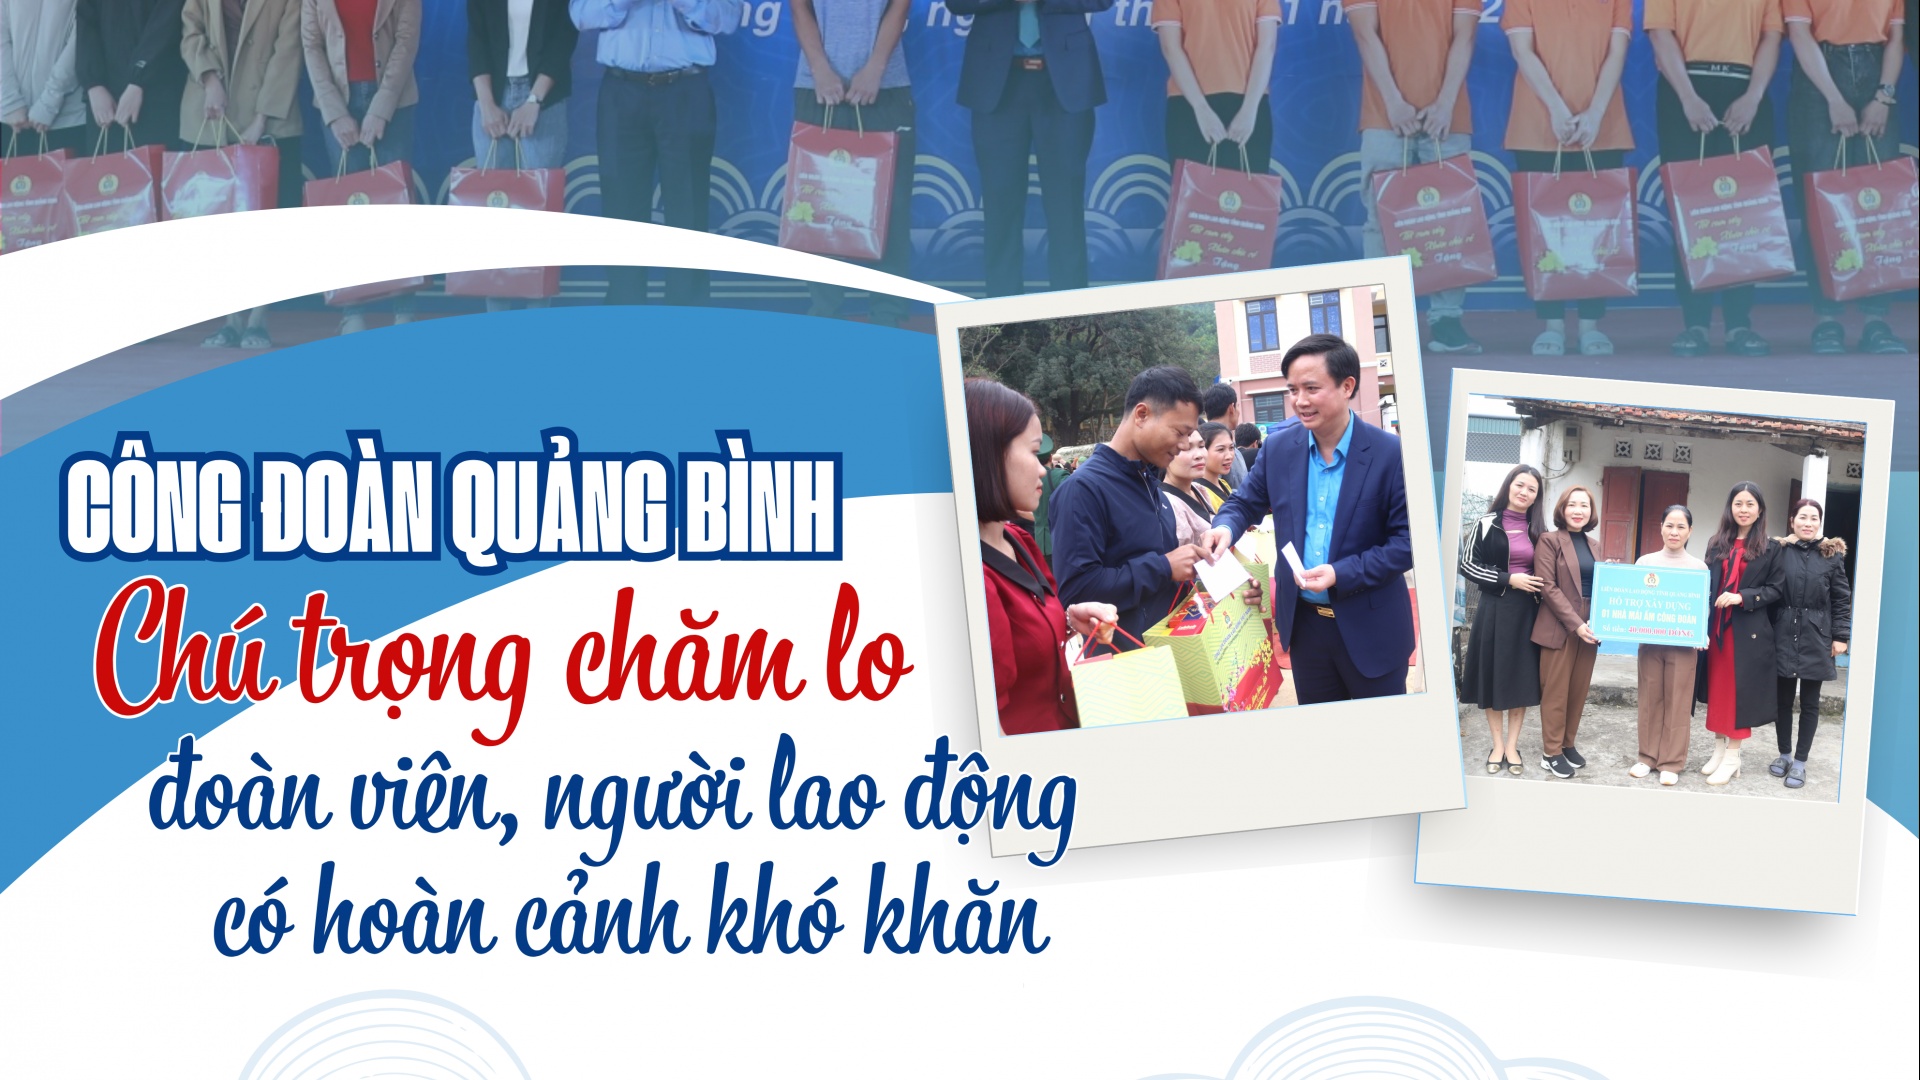 Công đoàn tỉnh Quảng Bình: Chú trọng chăm lo đoàn viên, người lao động có hoàn cảnh khó khăn